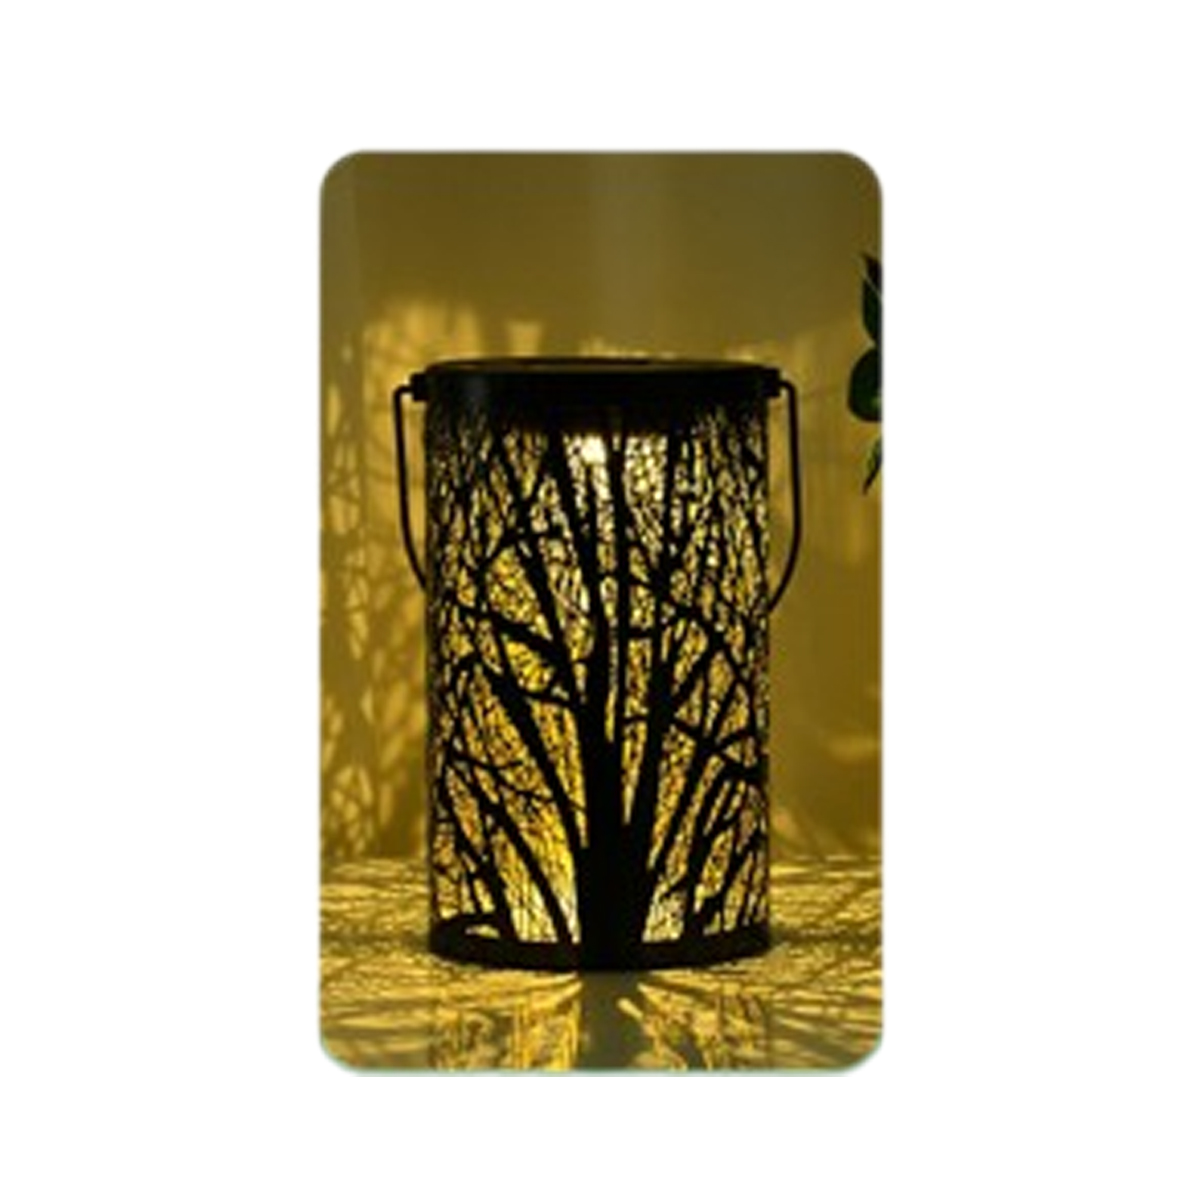 SYNTEK Außenleuchten Eisen Garten Solarbetrachtung Lichter Hängelampe Dekorative Lichter Baum Großer Großes-Baumlicht